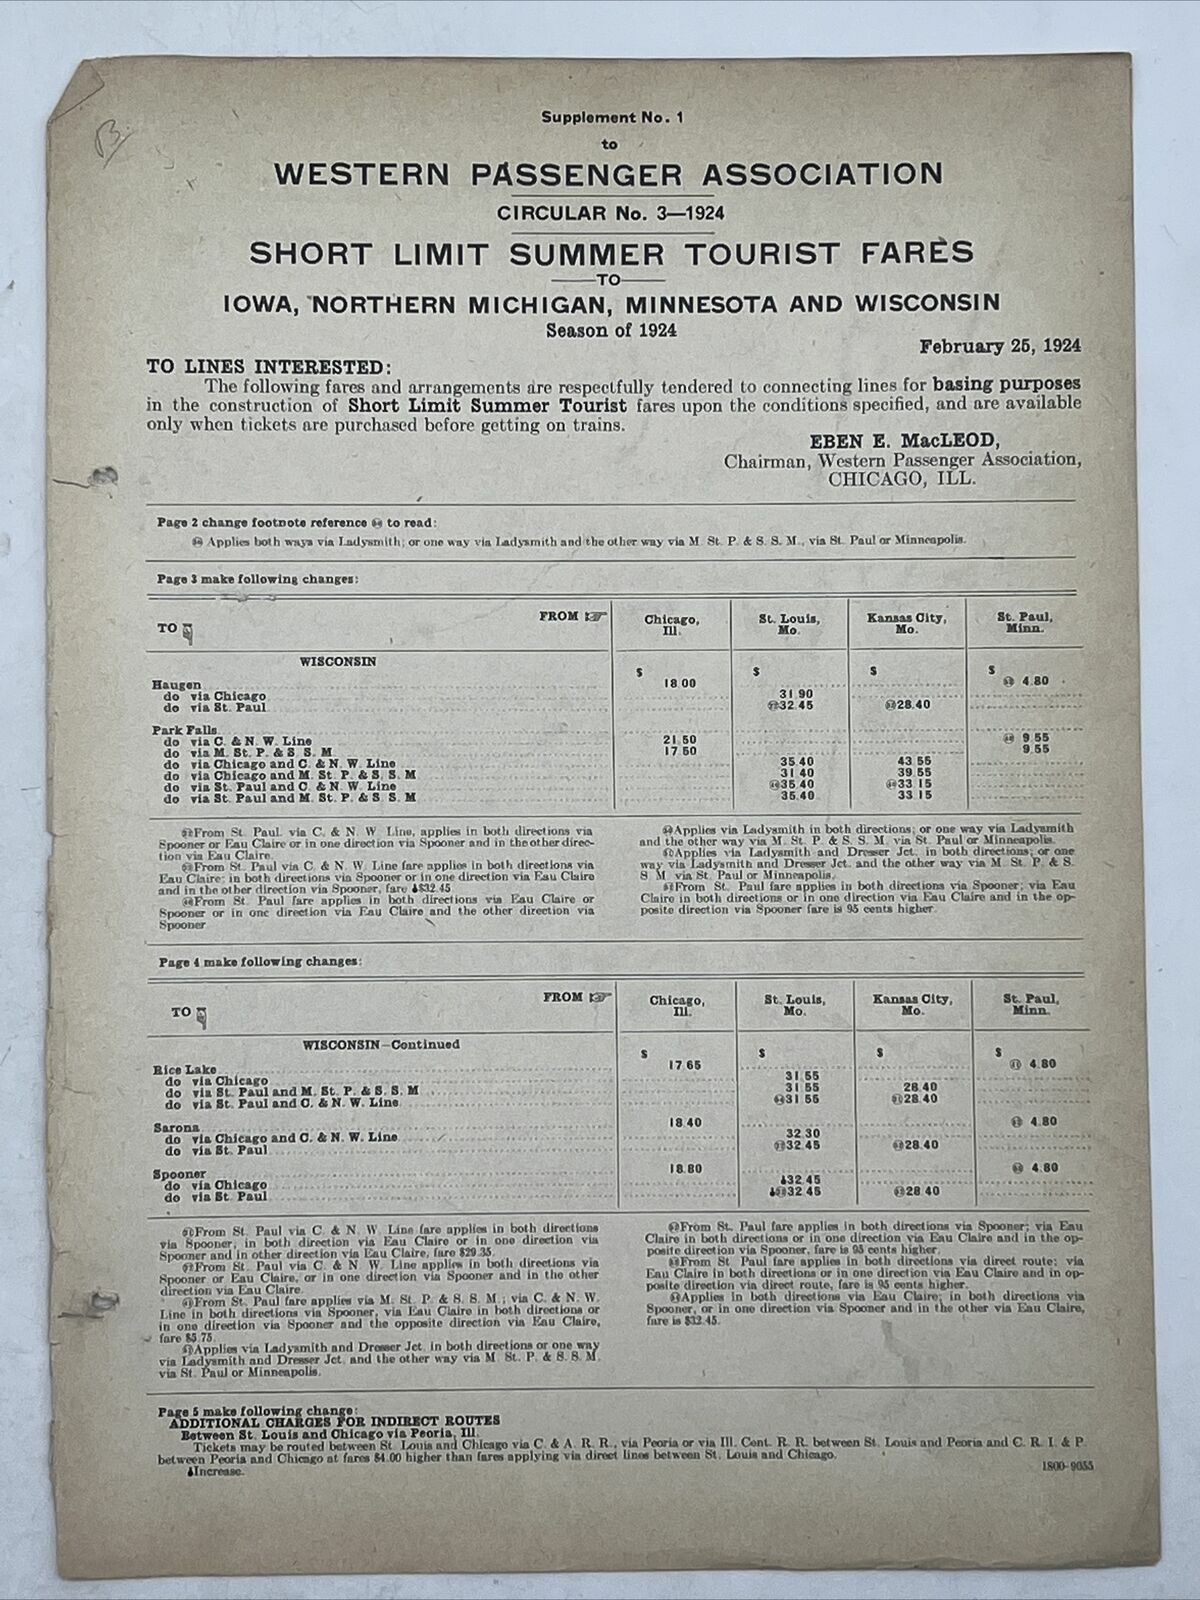 1924 WESTERN PASSENGER ASSOCIATION Circular 3 Supplement No. 1 SHORT LIMIT FARES